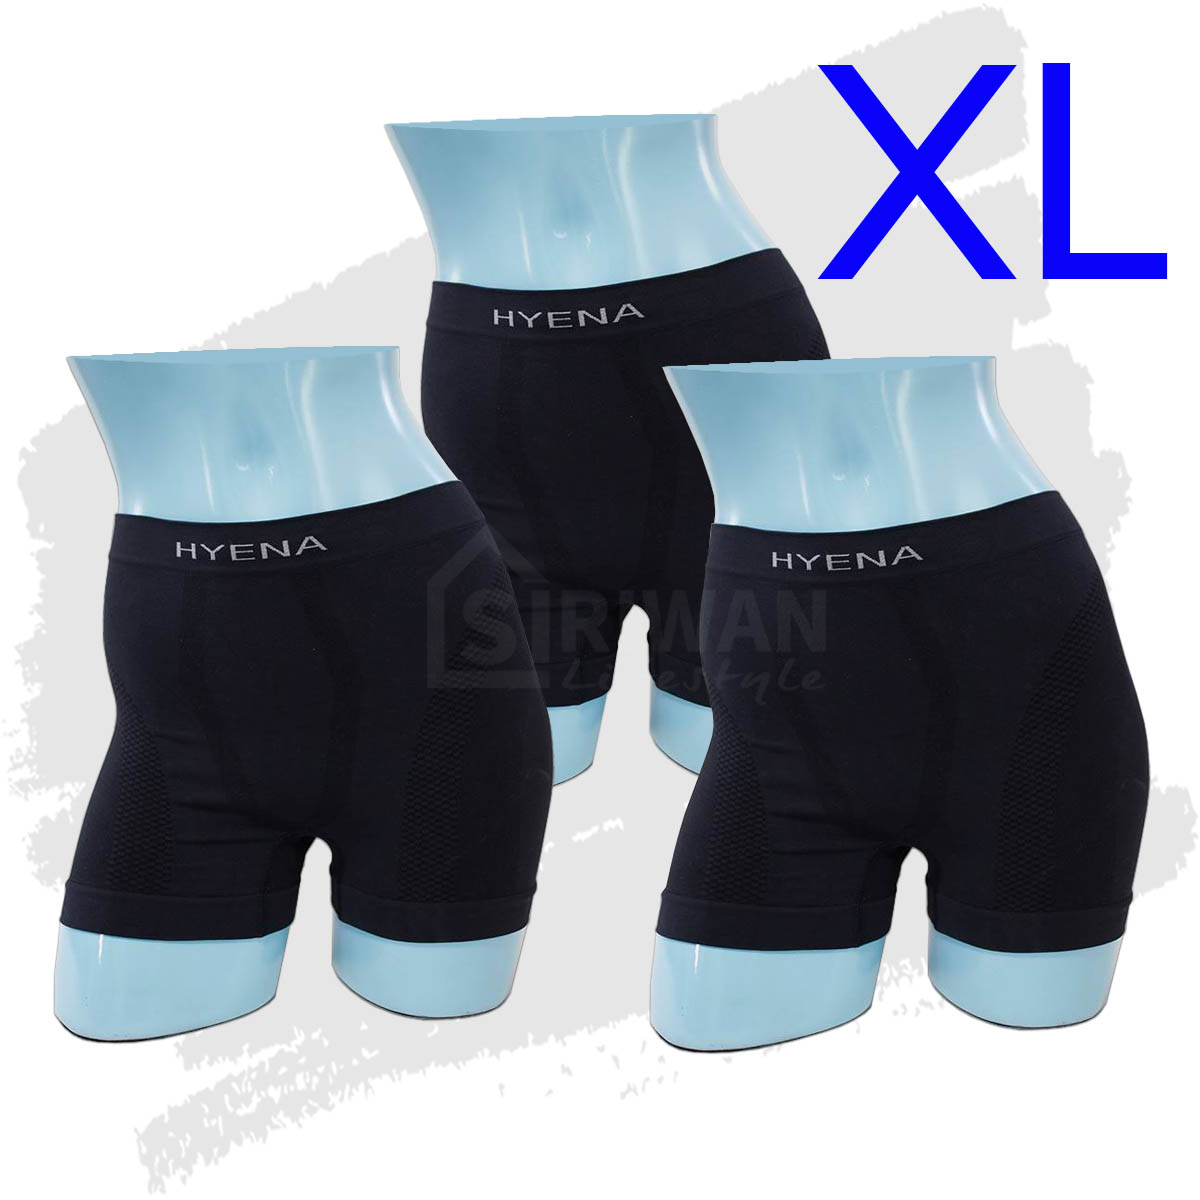 HYENA กางเกงในBoxer สีดำ,สีกรม ไซส์ M , L , XL ( แพ็ค 3ตัว ) รุ่นGSU